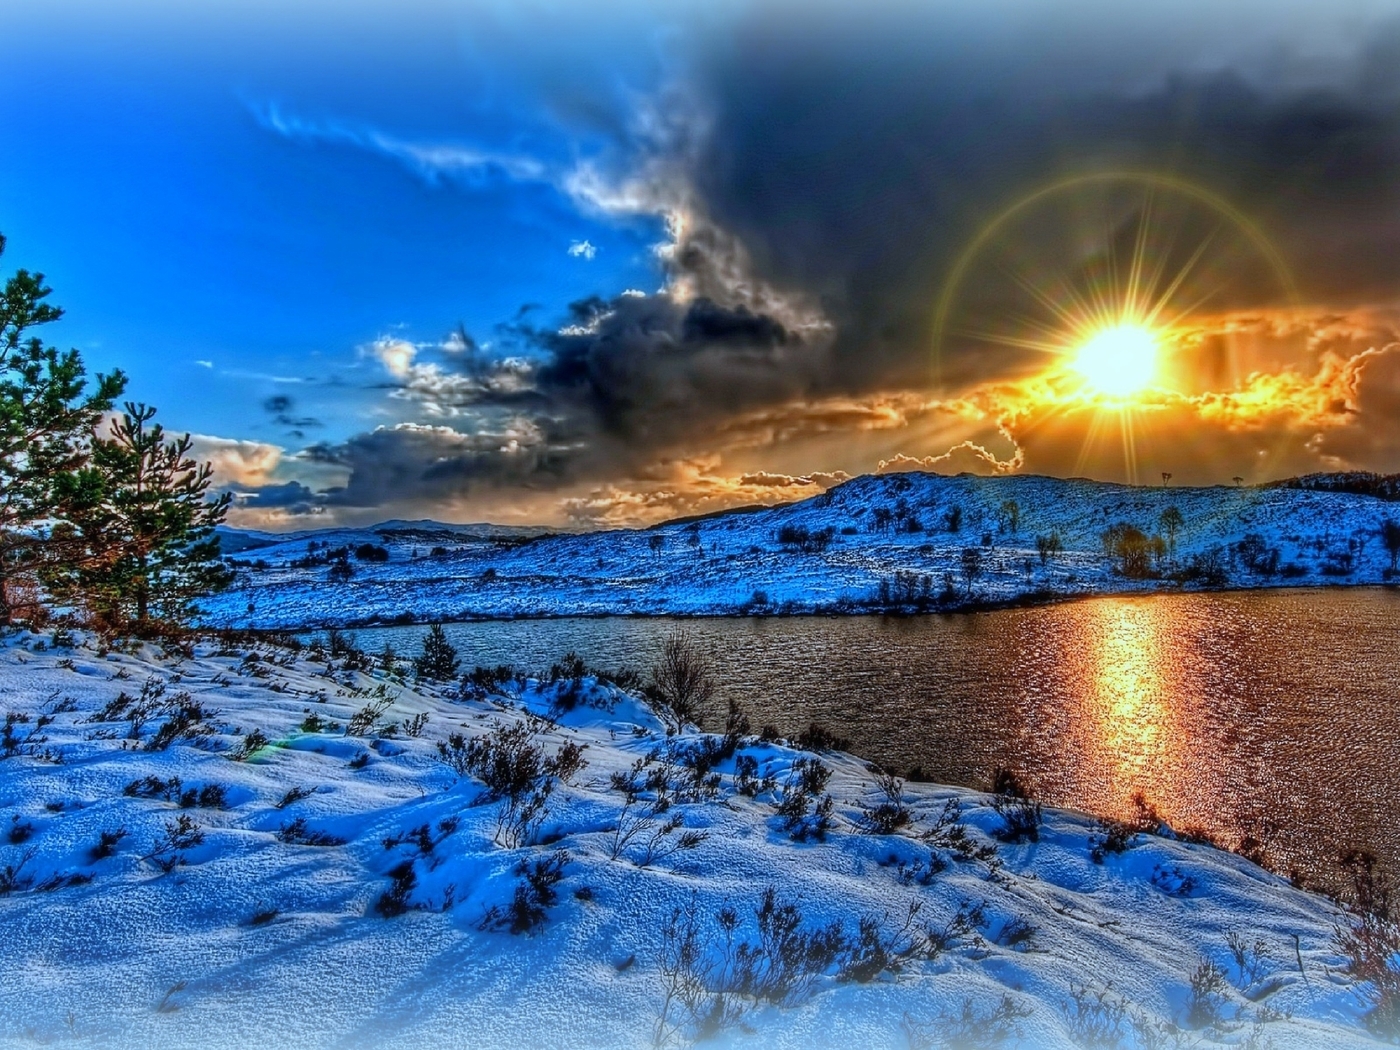 Картинка: Пейзаж, зима, снег, река, солнце, лучи, небо, деревья, тучи